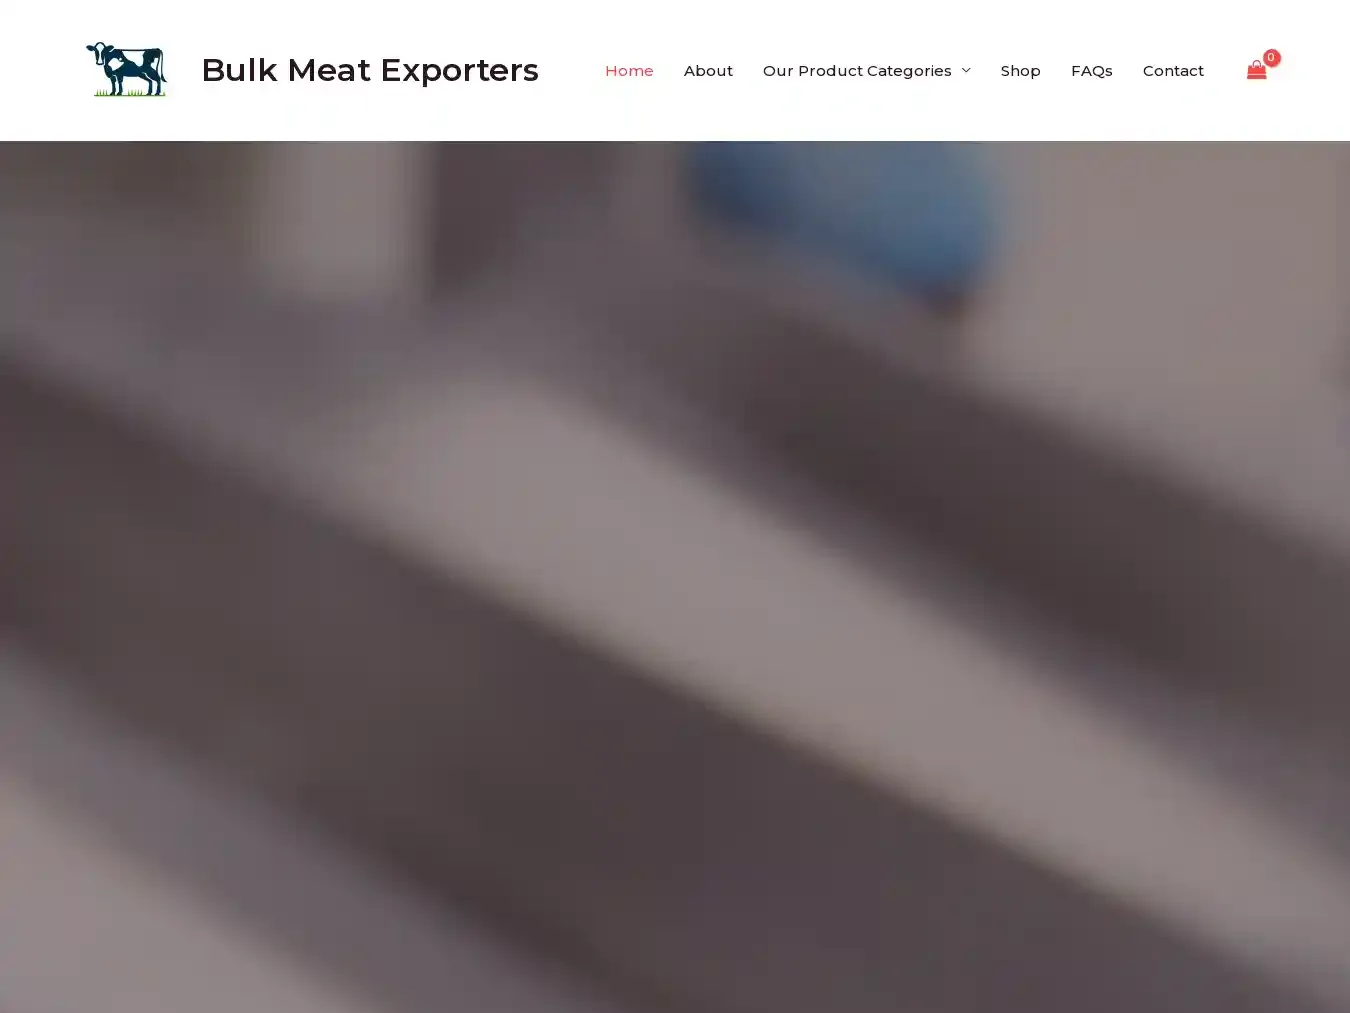 Bulkmeatexporters.com Fraudulent Commodity website.